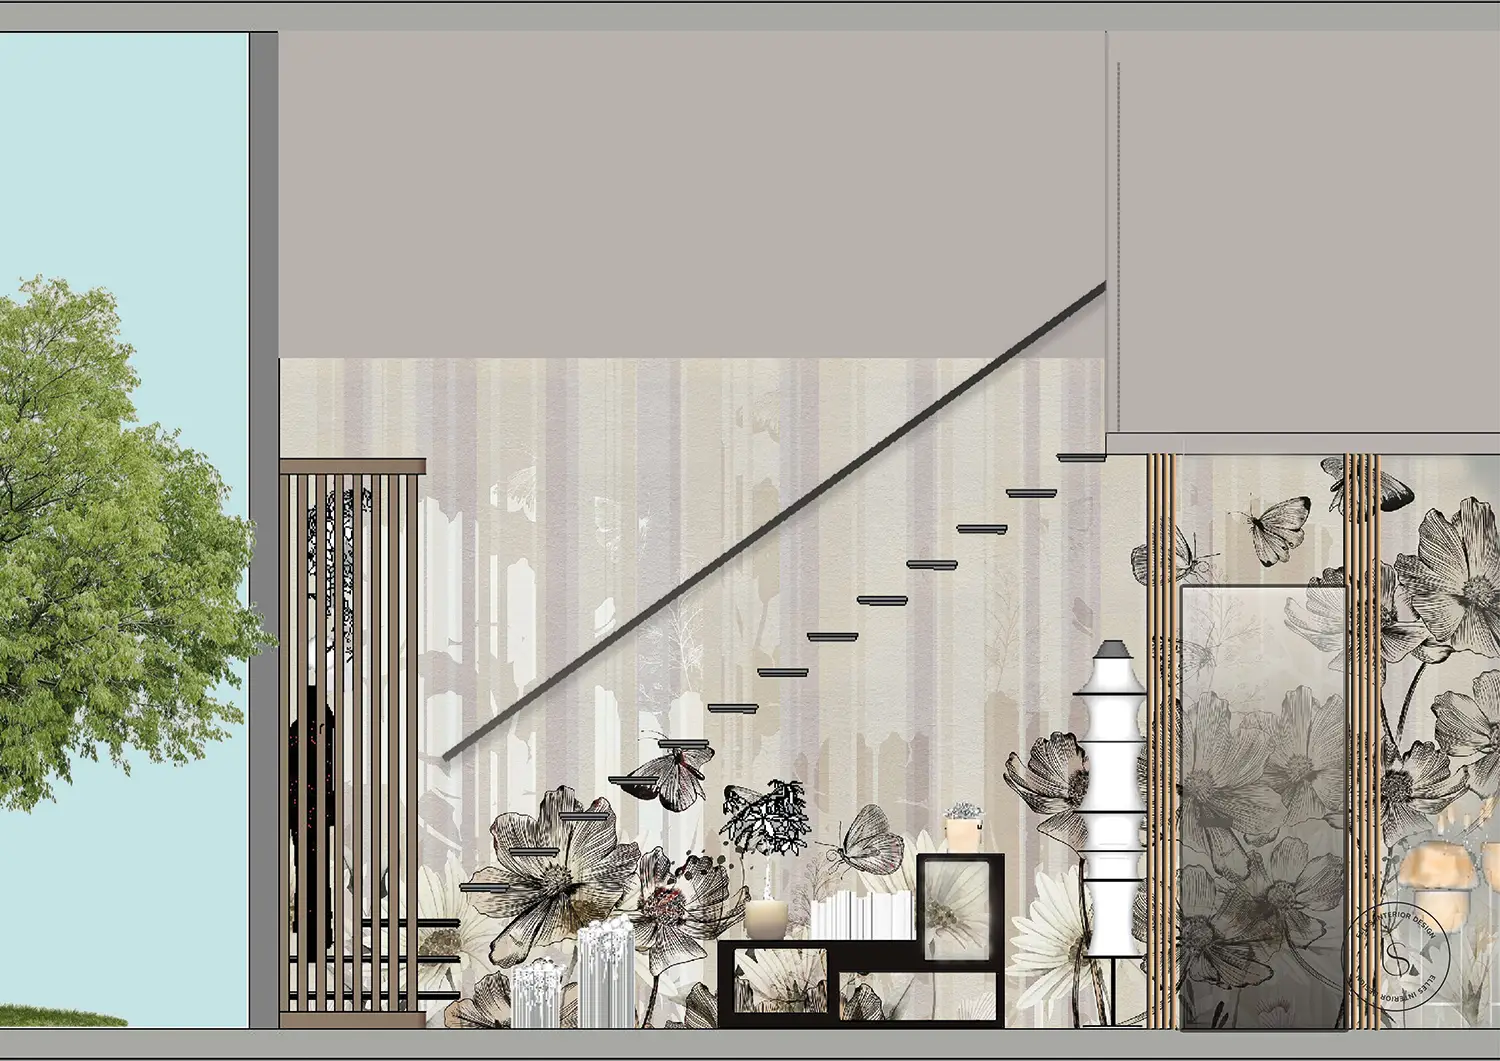 Visualizzazione parete scala decorata con tappezzeria floreale dai toni caldi e brillanti